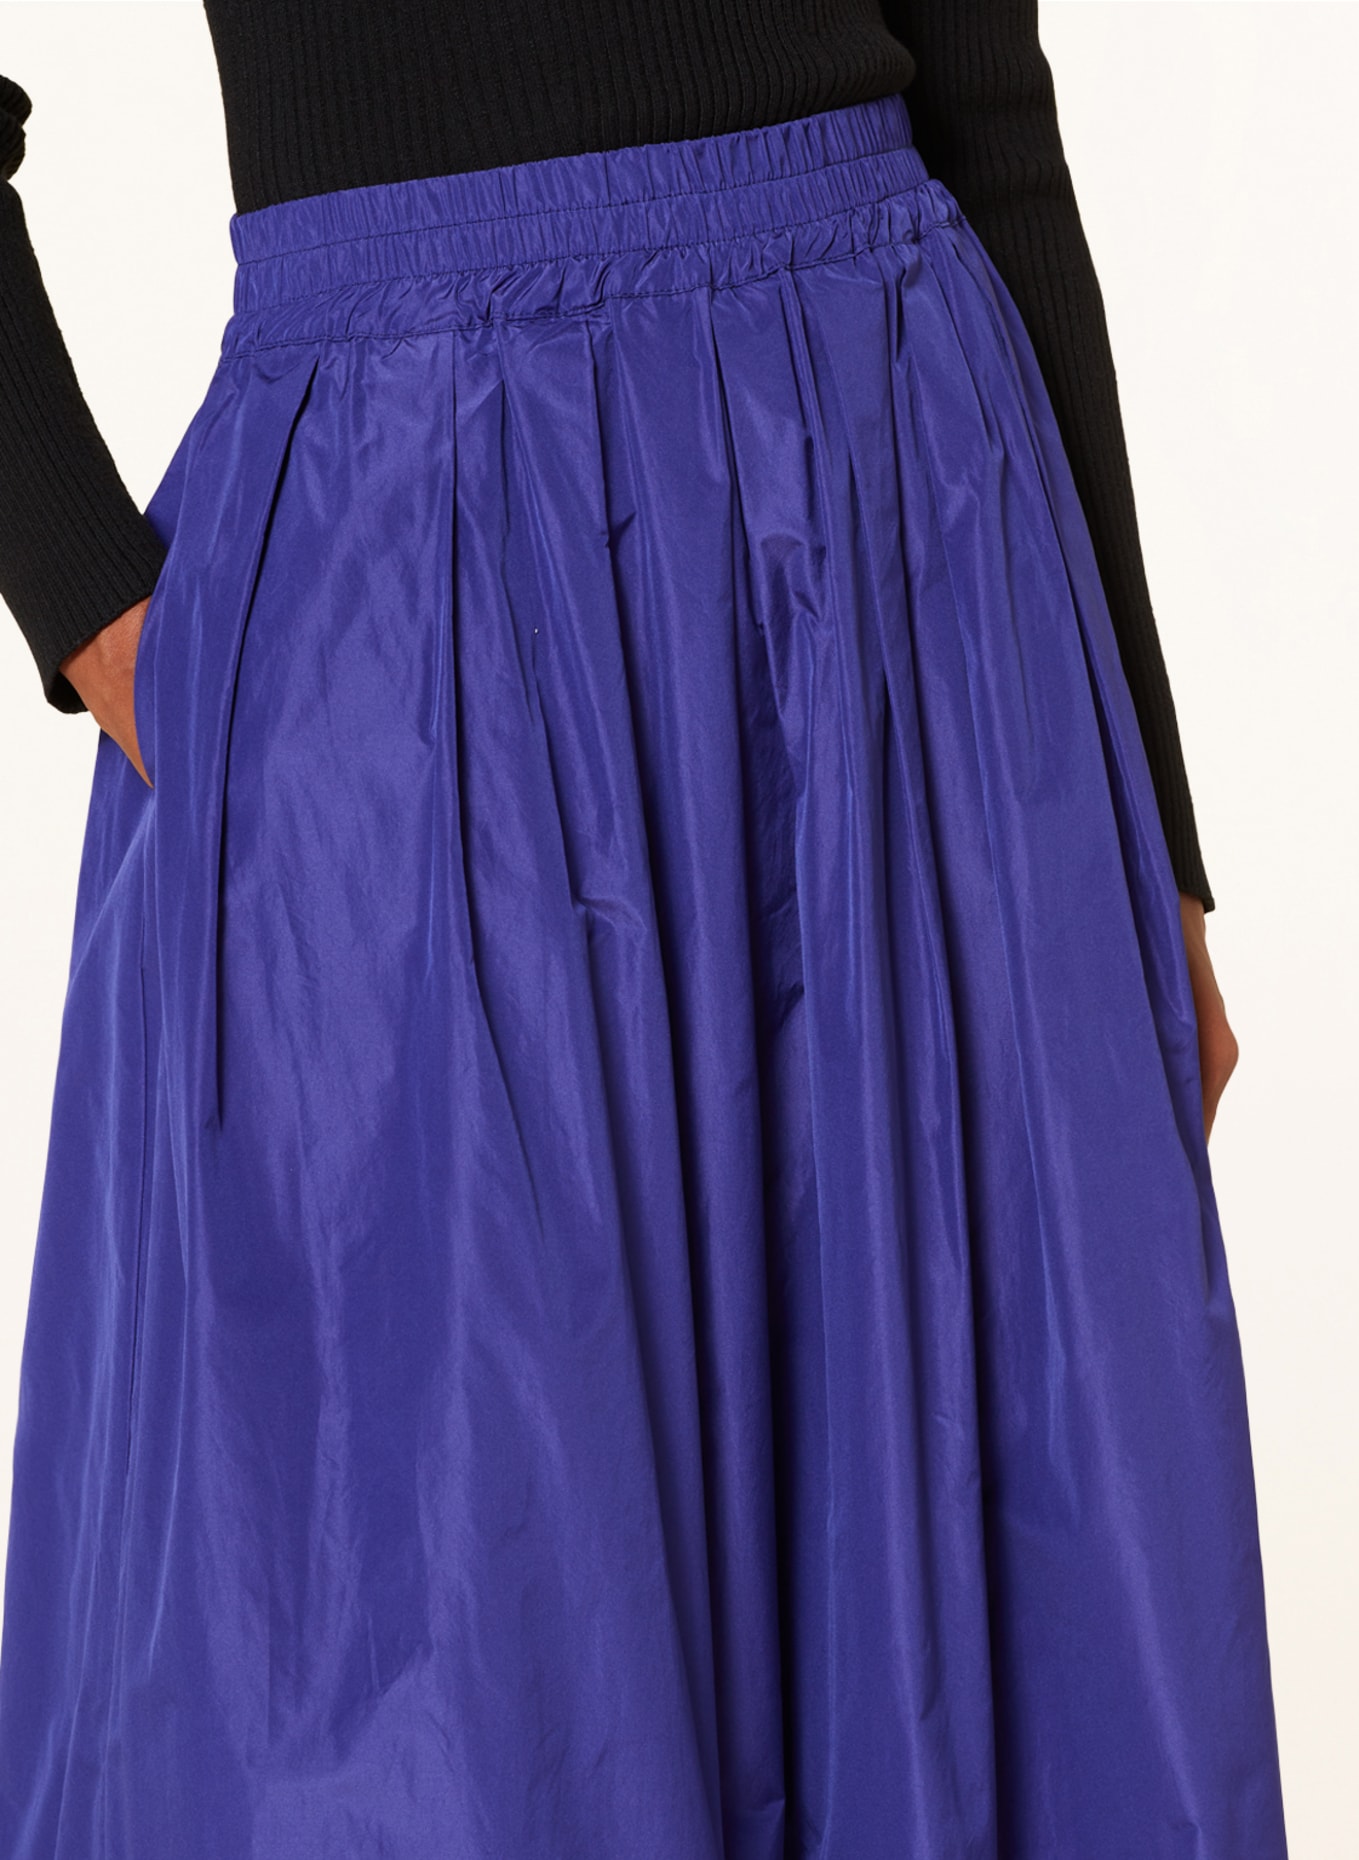 lilienfels Skirt, Color: PURPLE (Image 4)